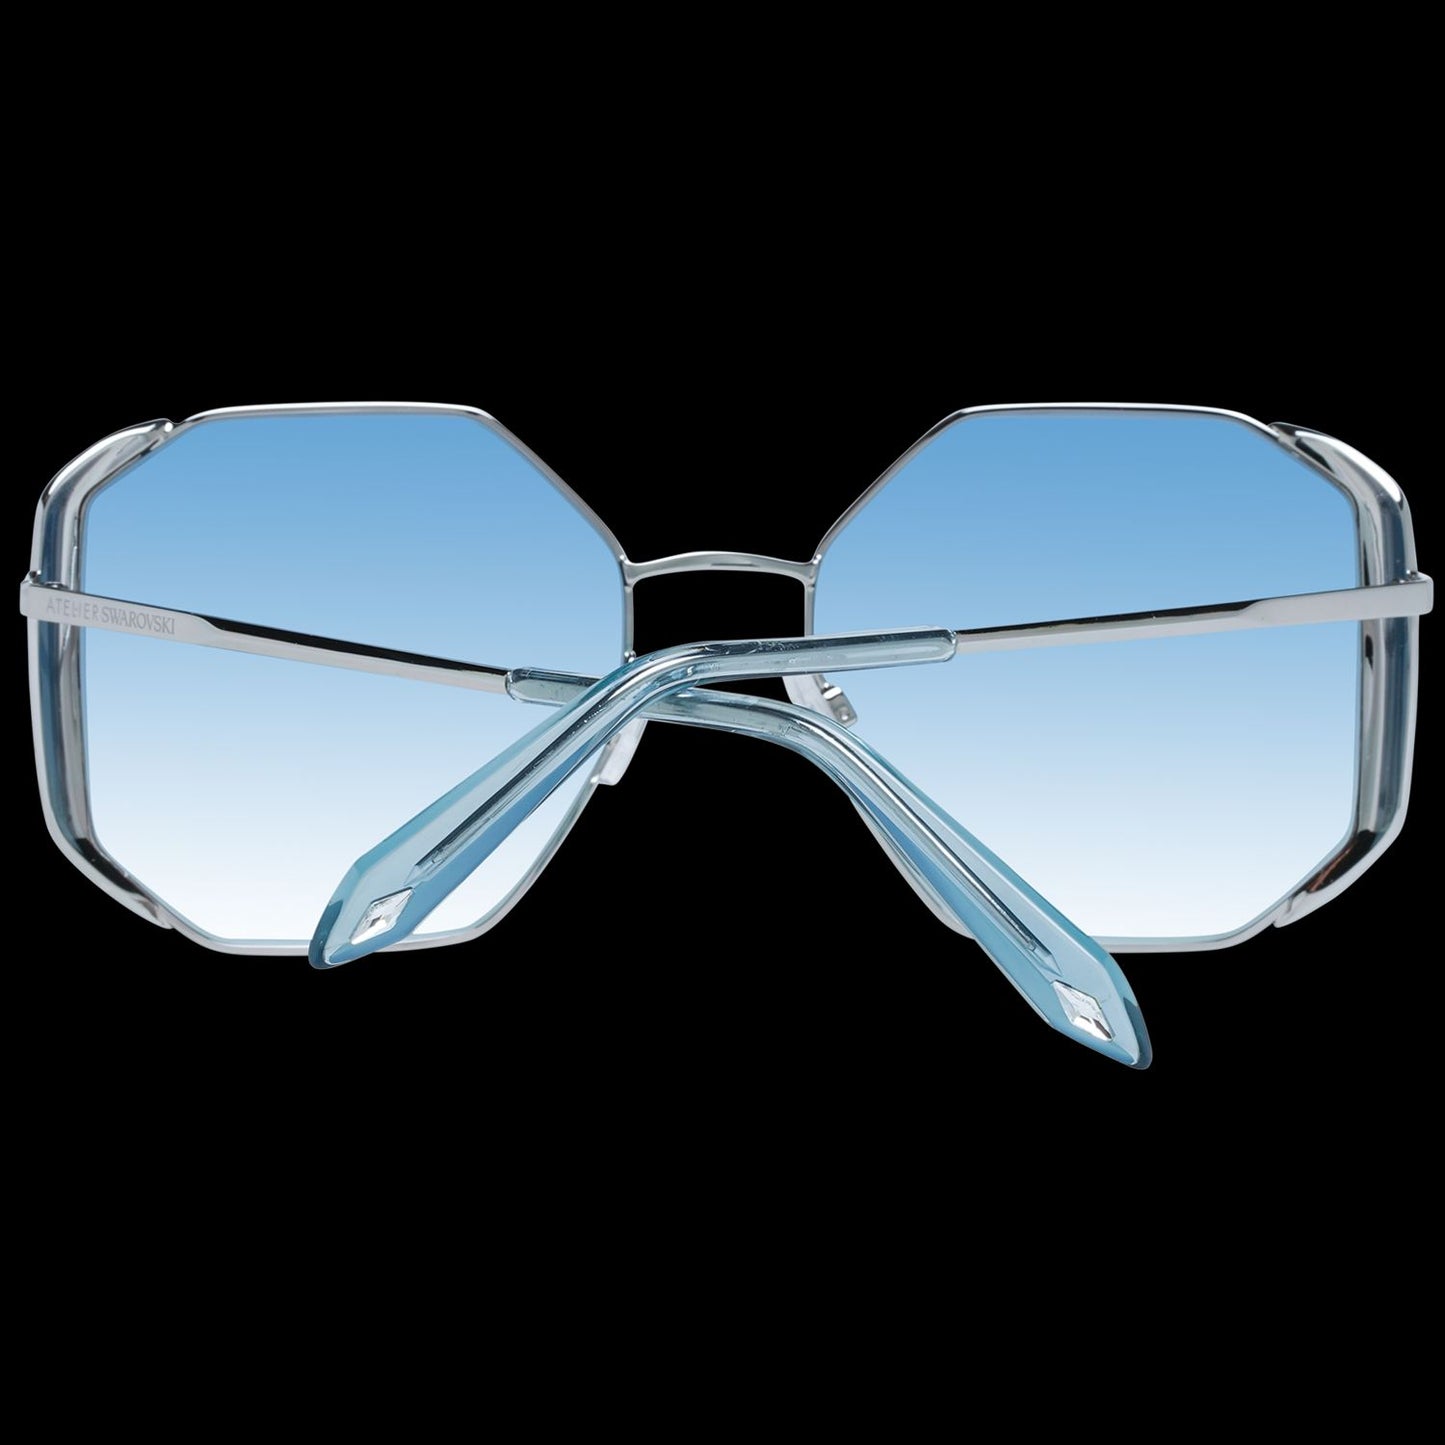 Elegant Silver Trapezium Sunglasses